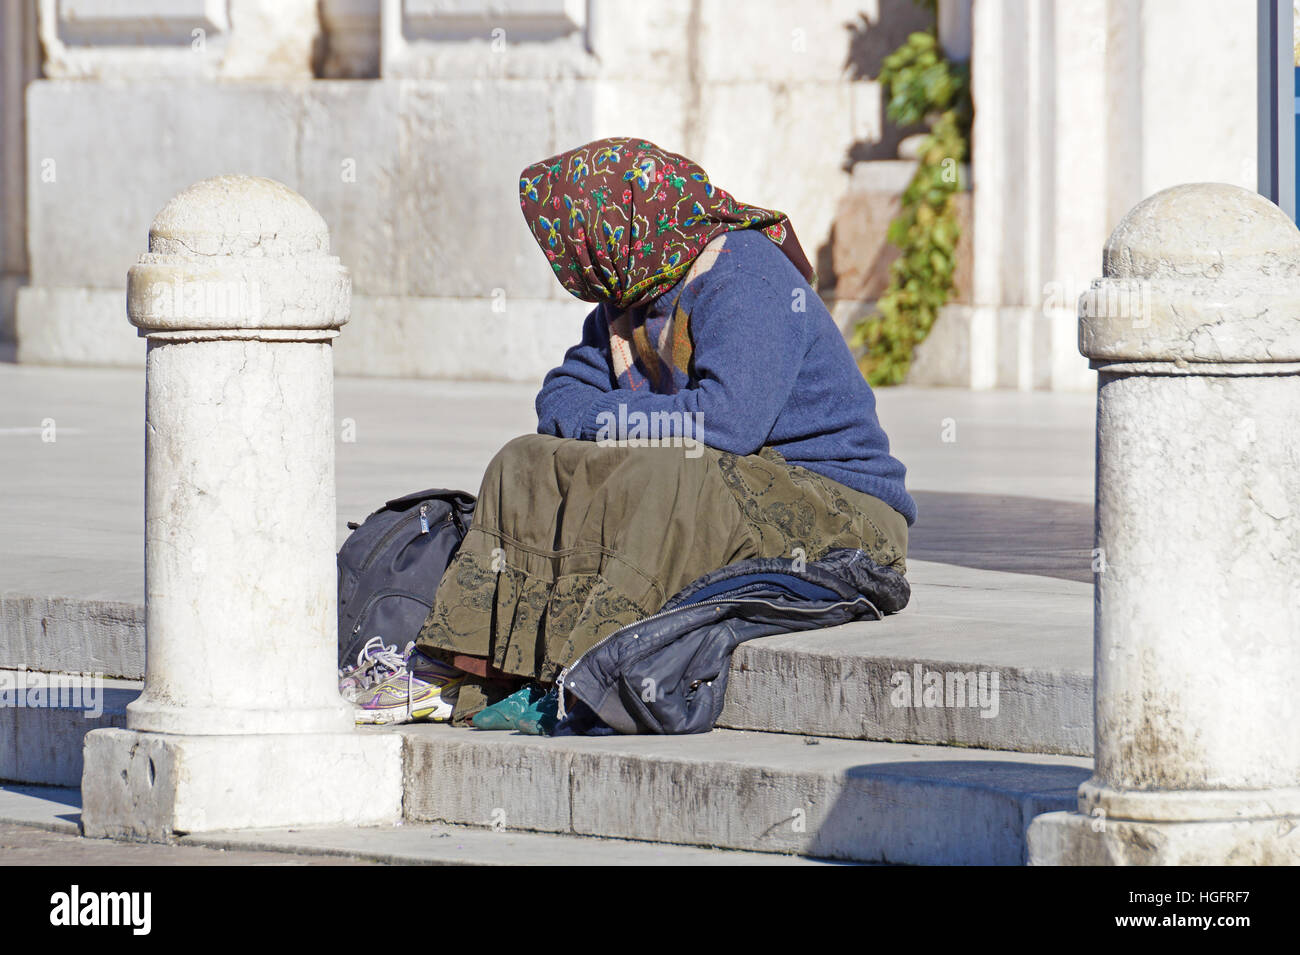 Rom, Italien - 24. März 2016: Obdachlose, wie abgebildet, kann sein gesehen fast an jeder Ecke der Straße im Zentrum der großen Städte Stockfoto